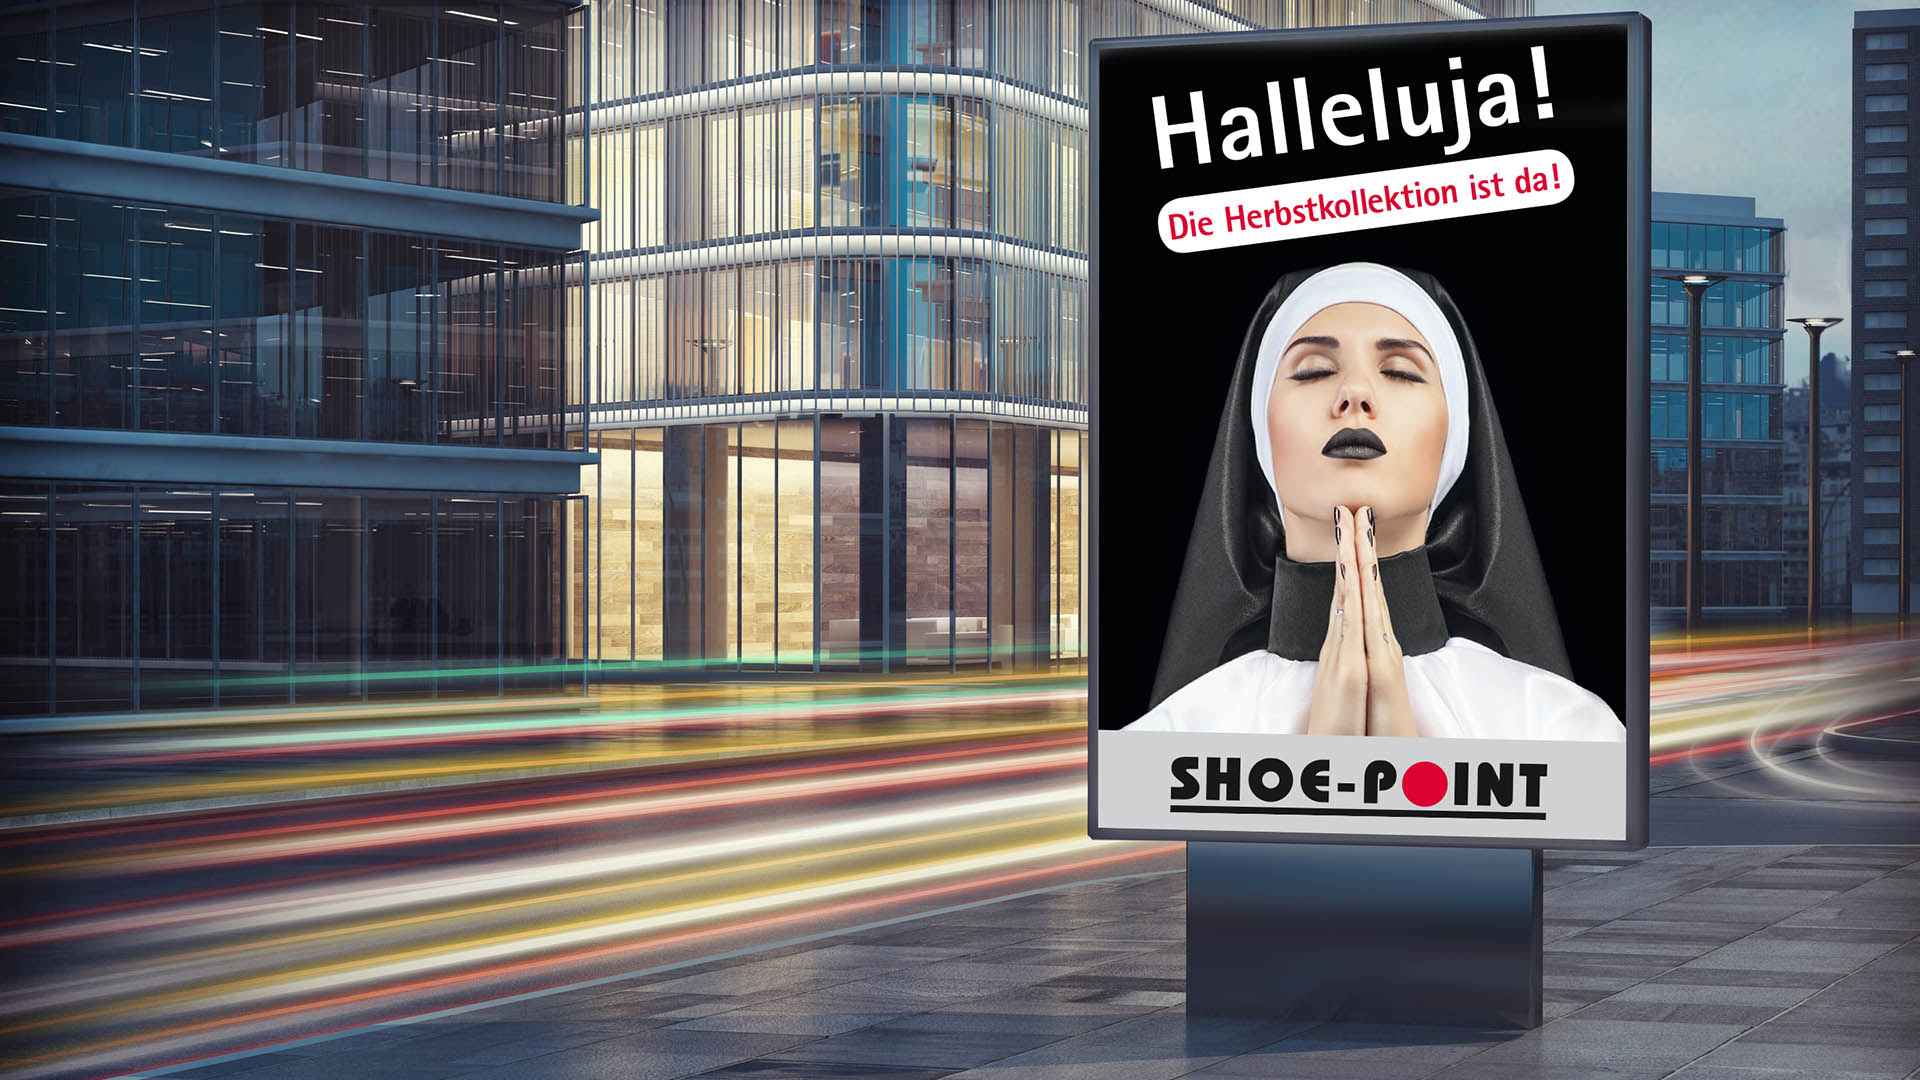 Scribble Werbeagentur in Geilenkirchen, Kreis Heinsberg, zeigt eine Nonne auf einem City-Light-Poster.